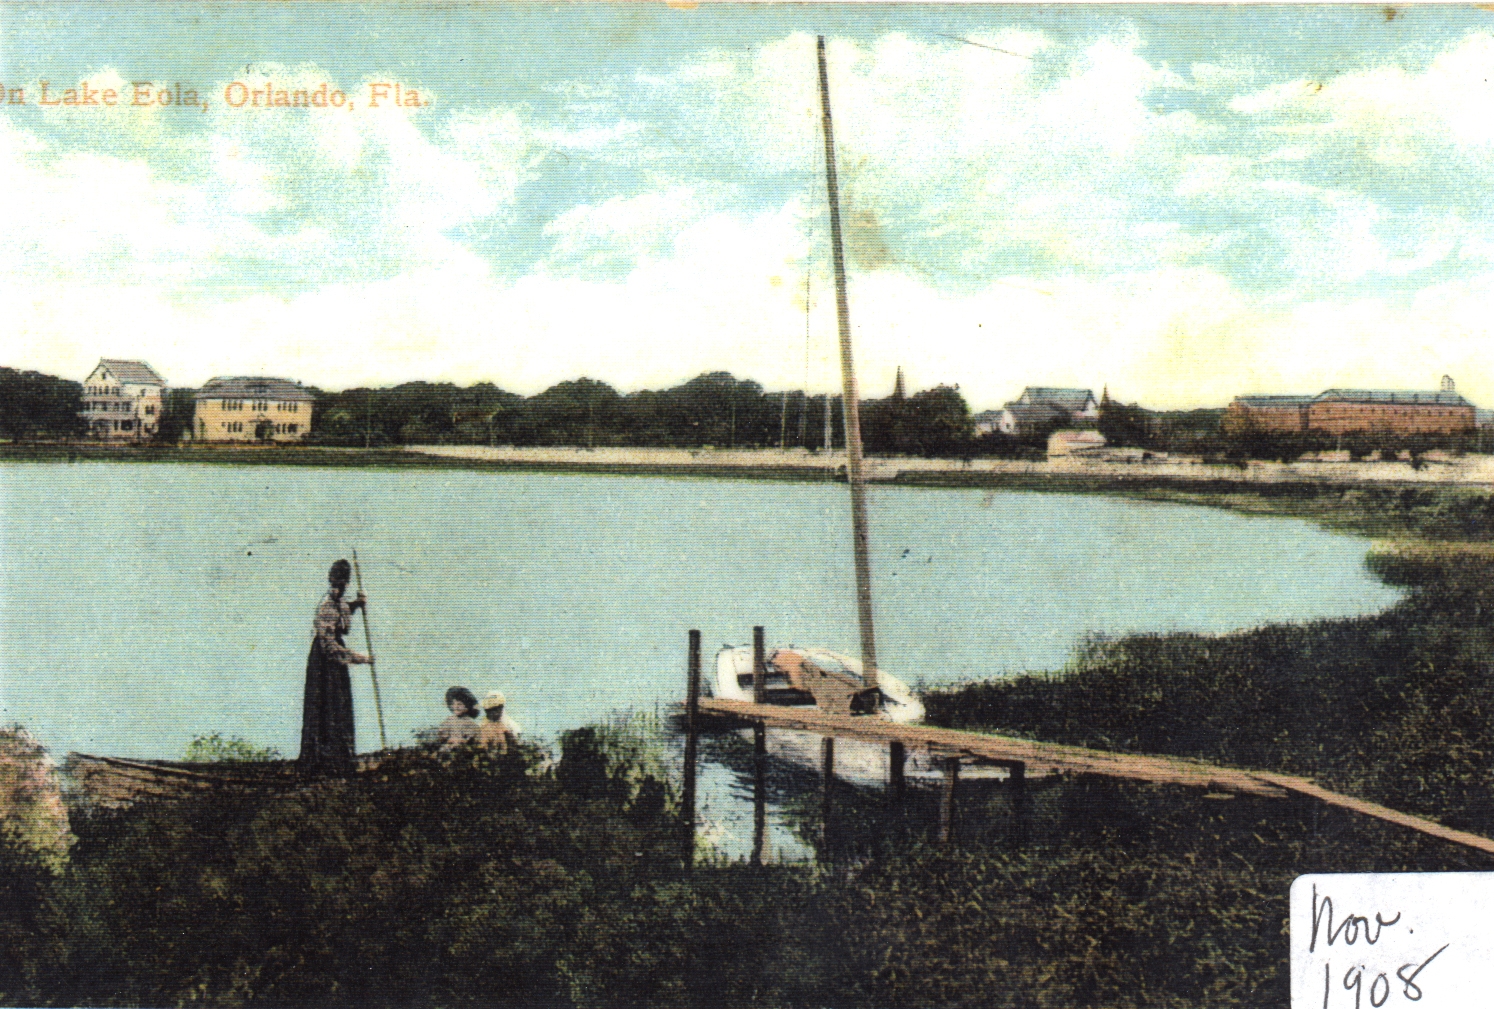 Lake Eola in 1908